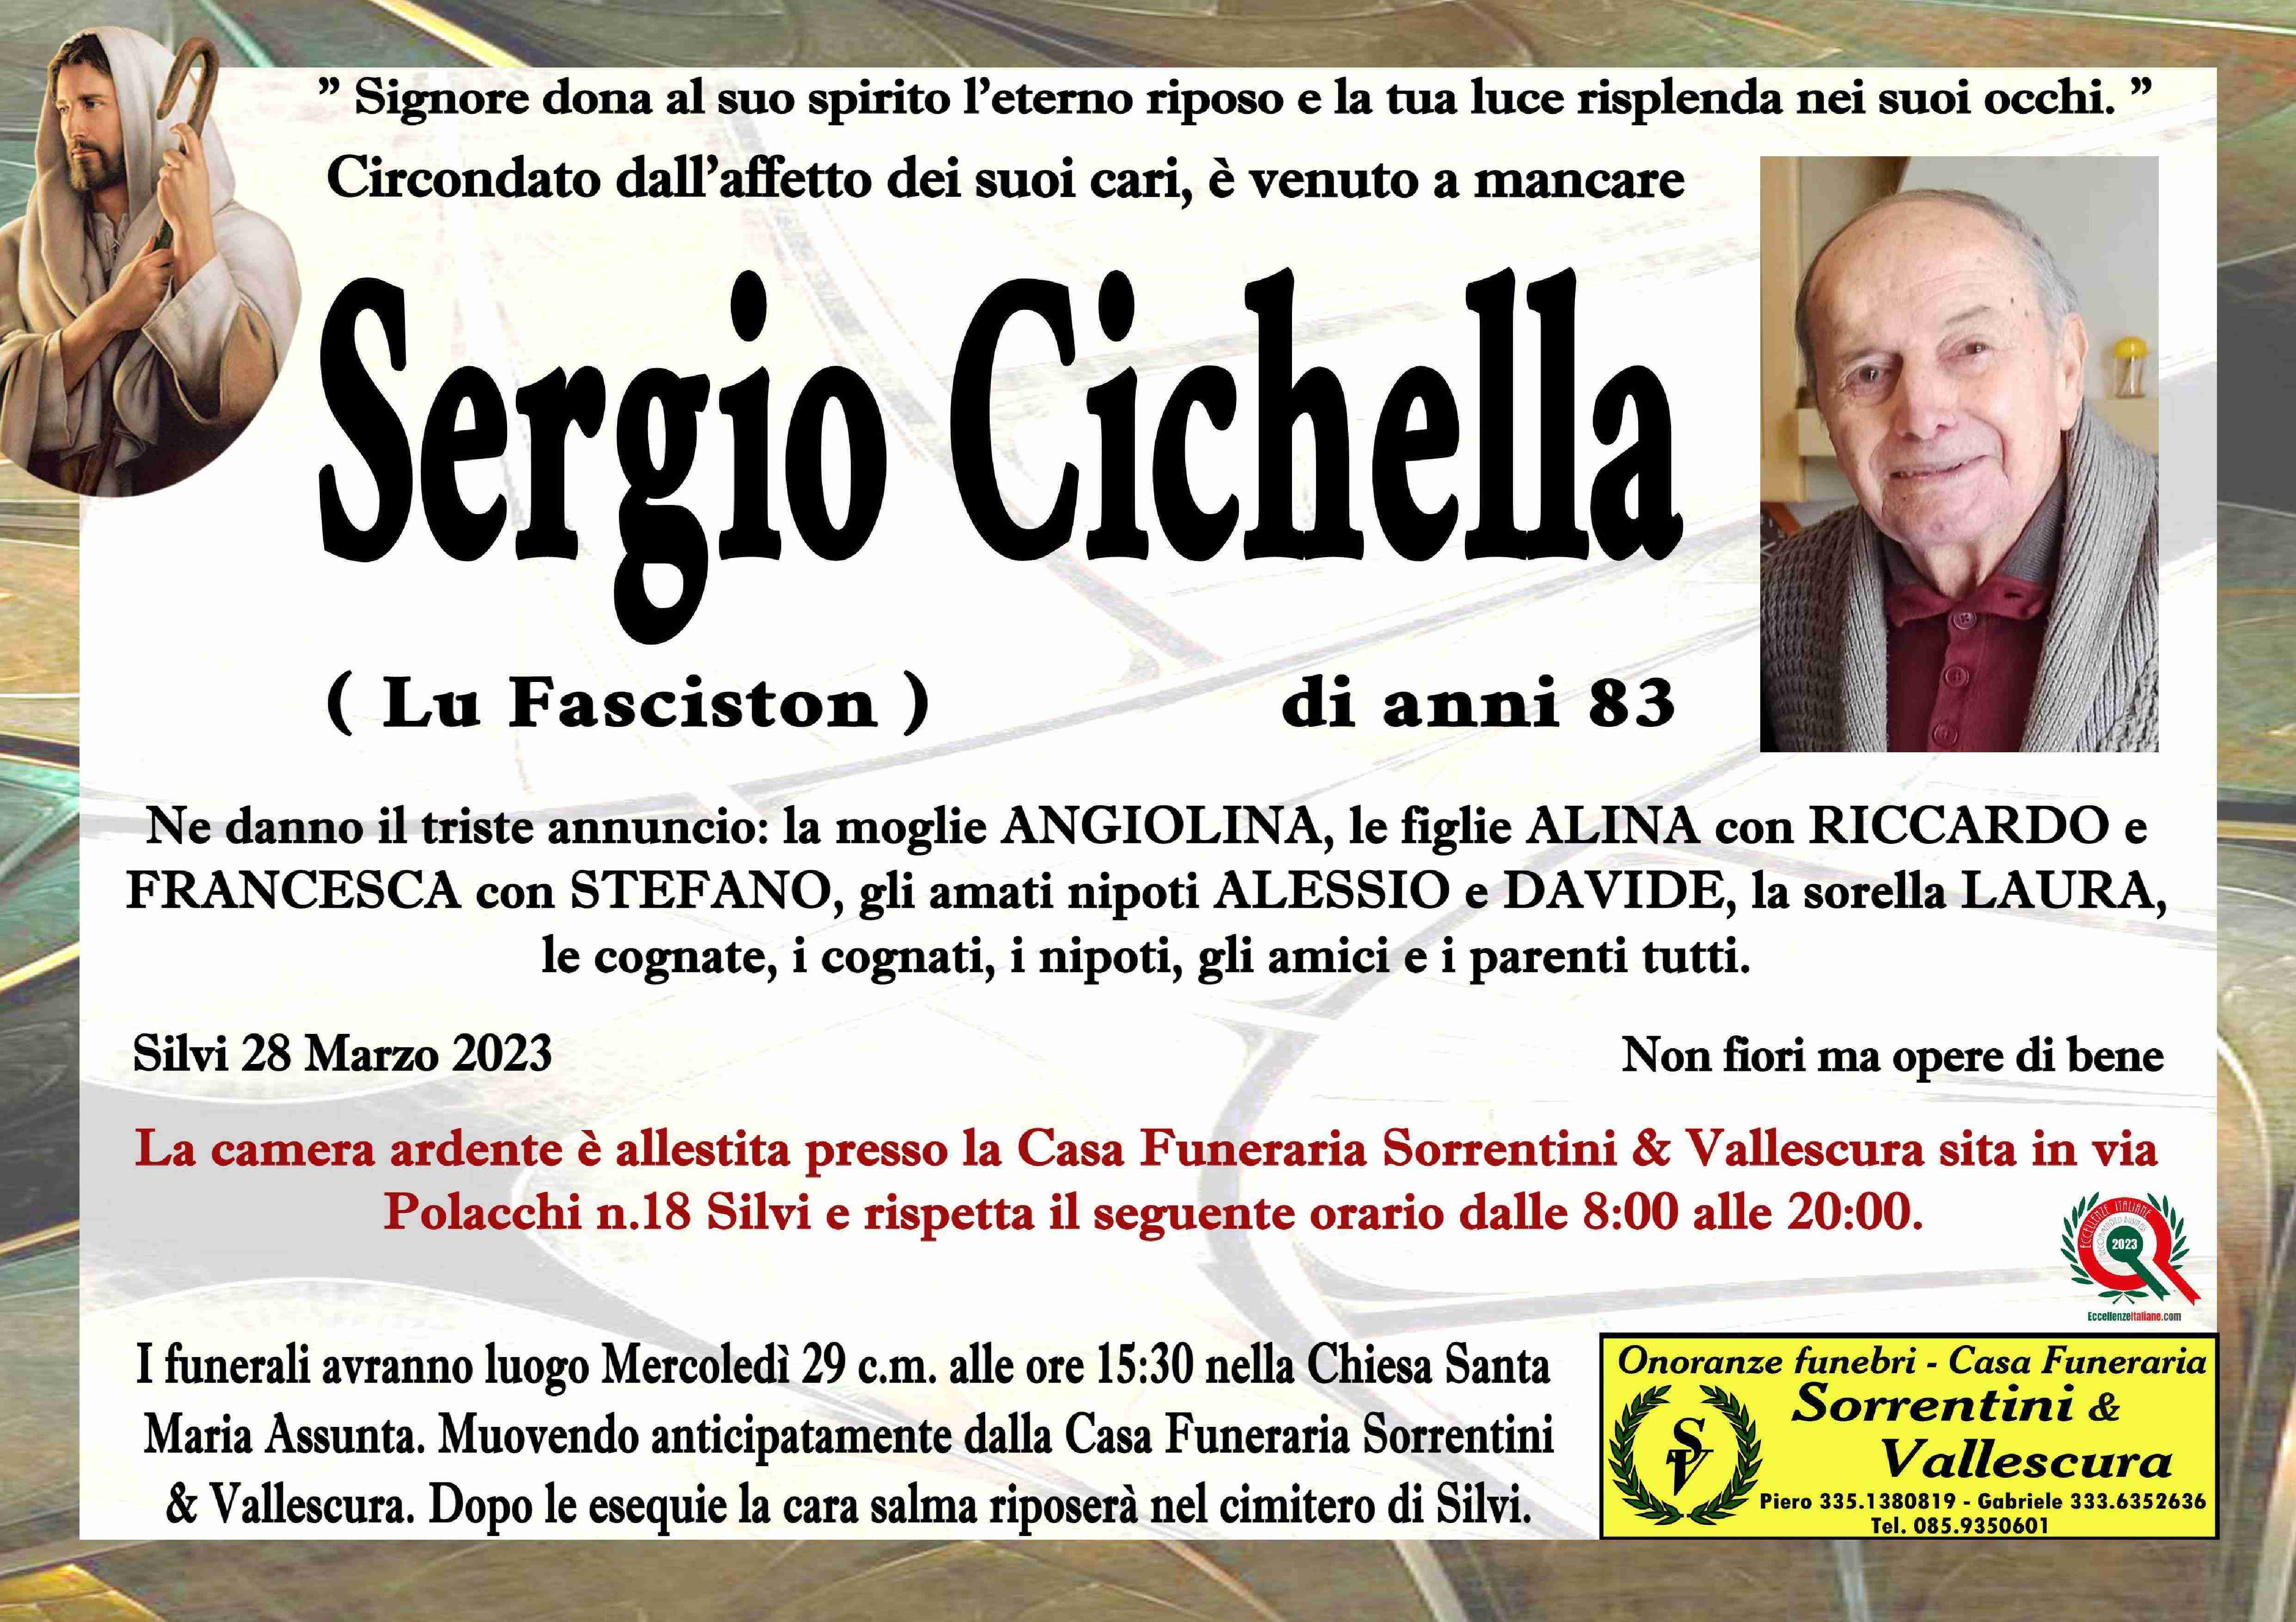 Sergio Cichella